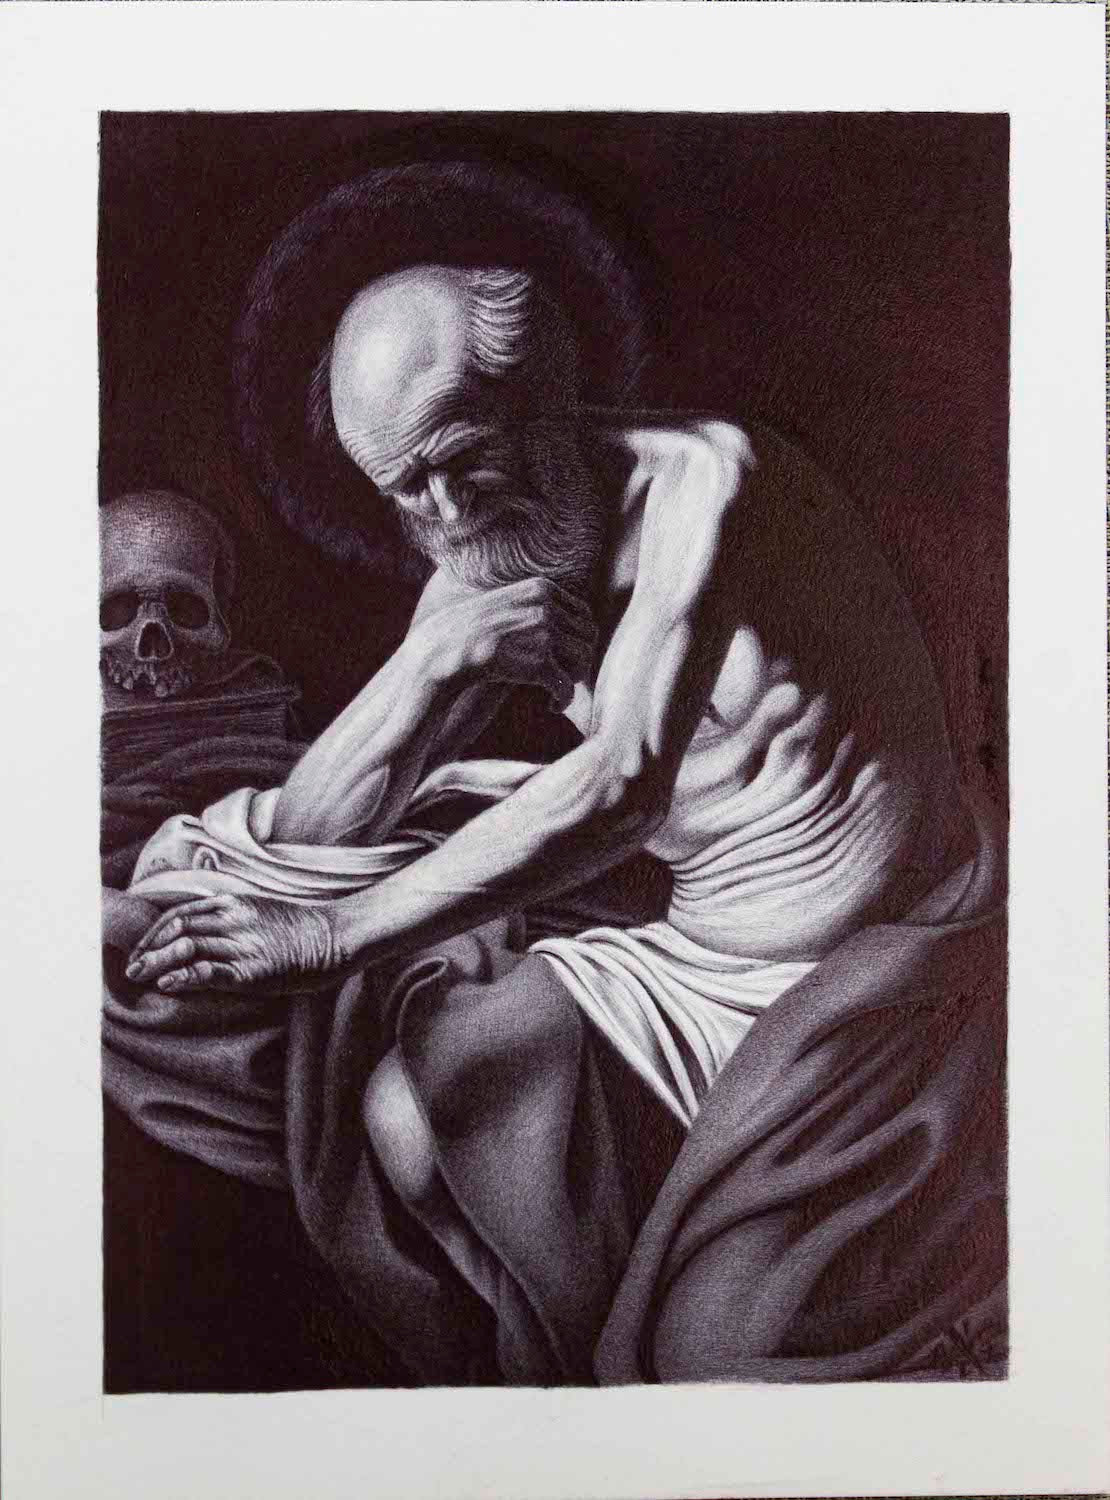 "Contemplation of life & death" prison art original art The Exile 